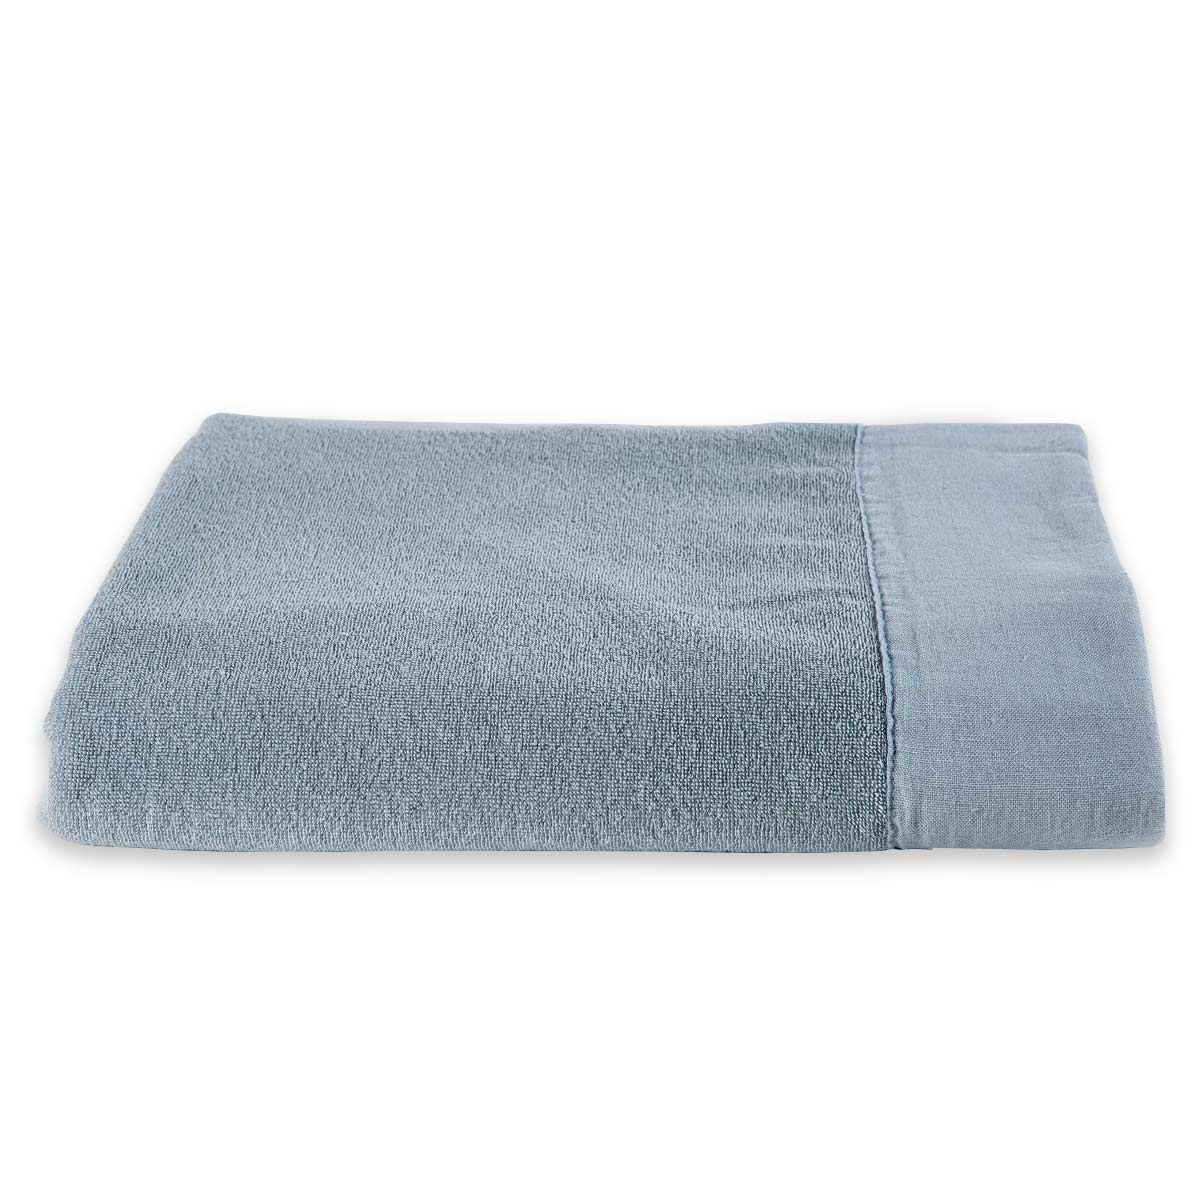 Telo doccia azzurro e asciugamani bagno